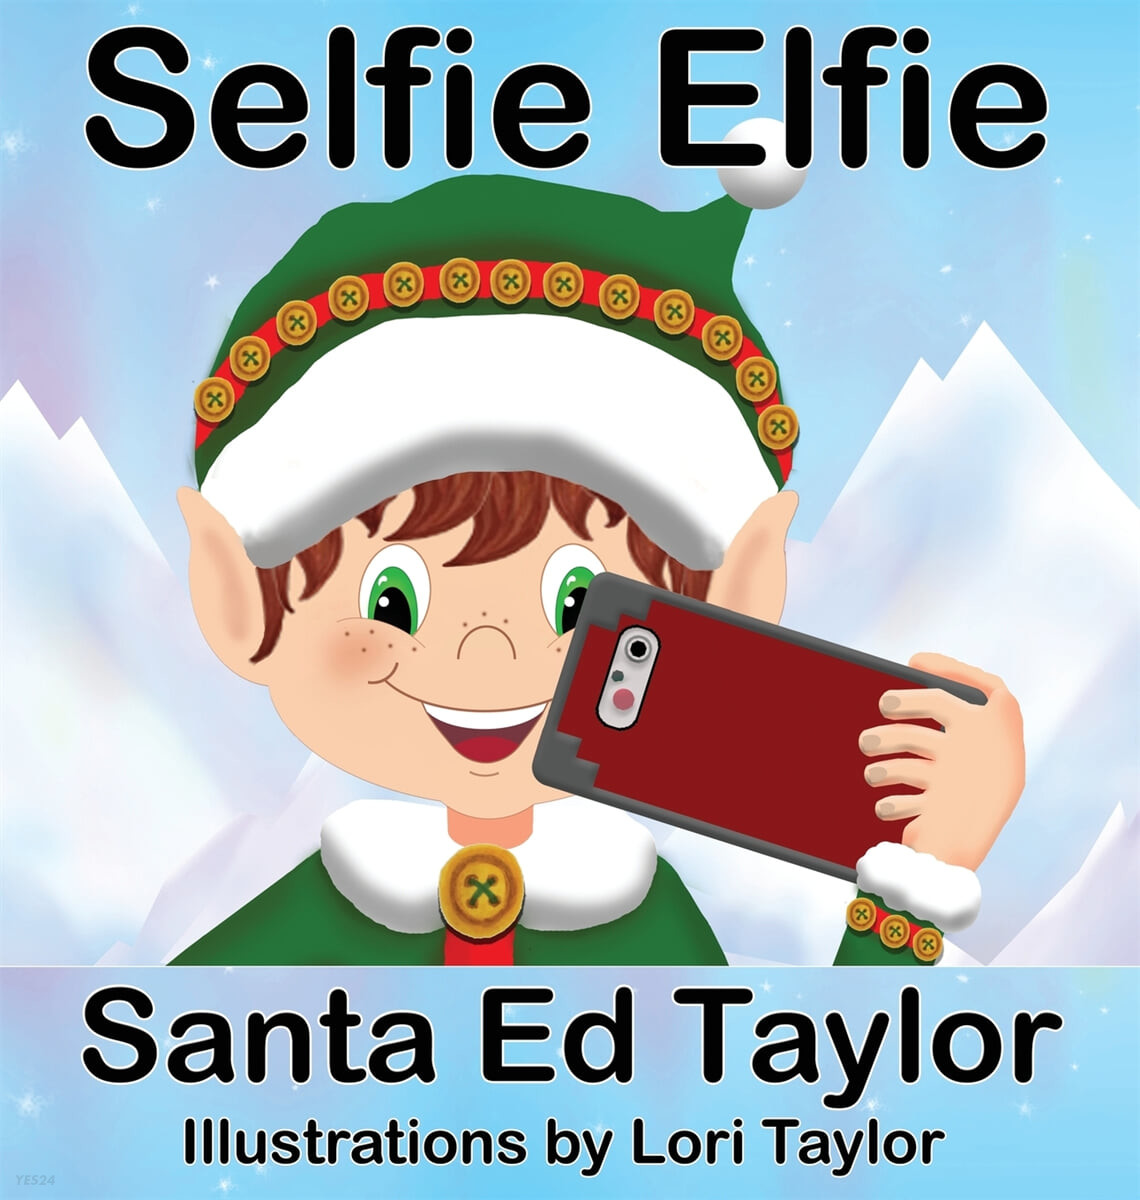 Selfie Elfie 2